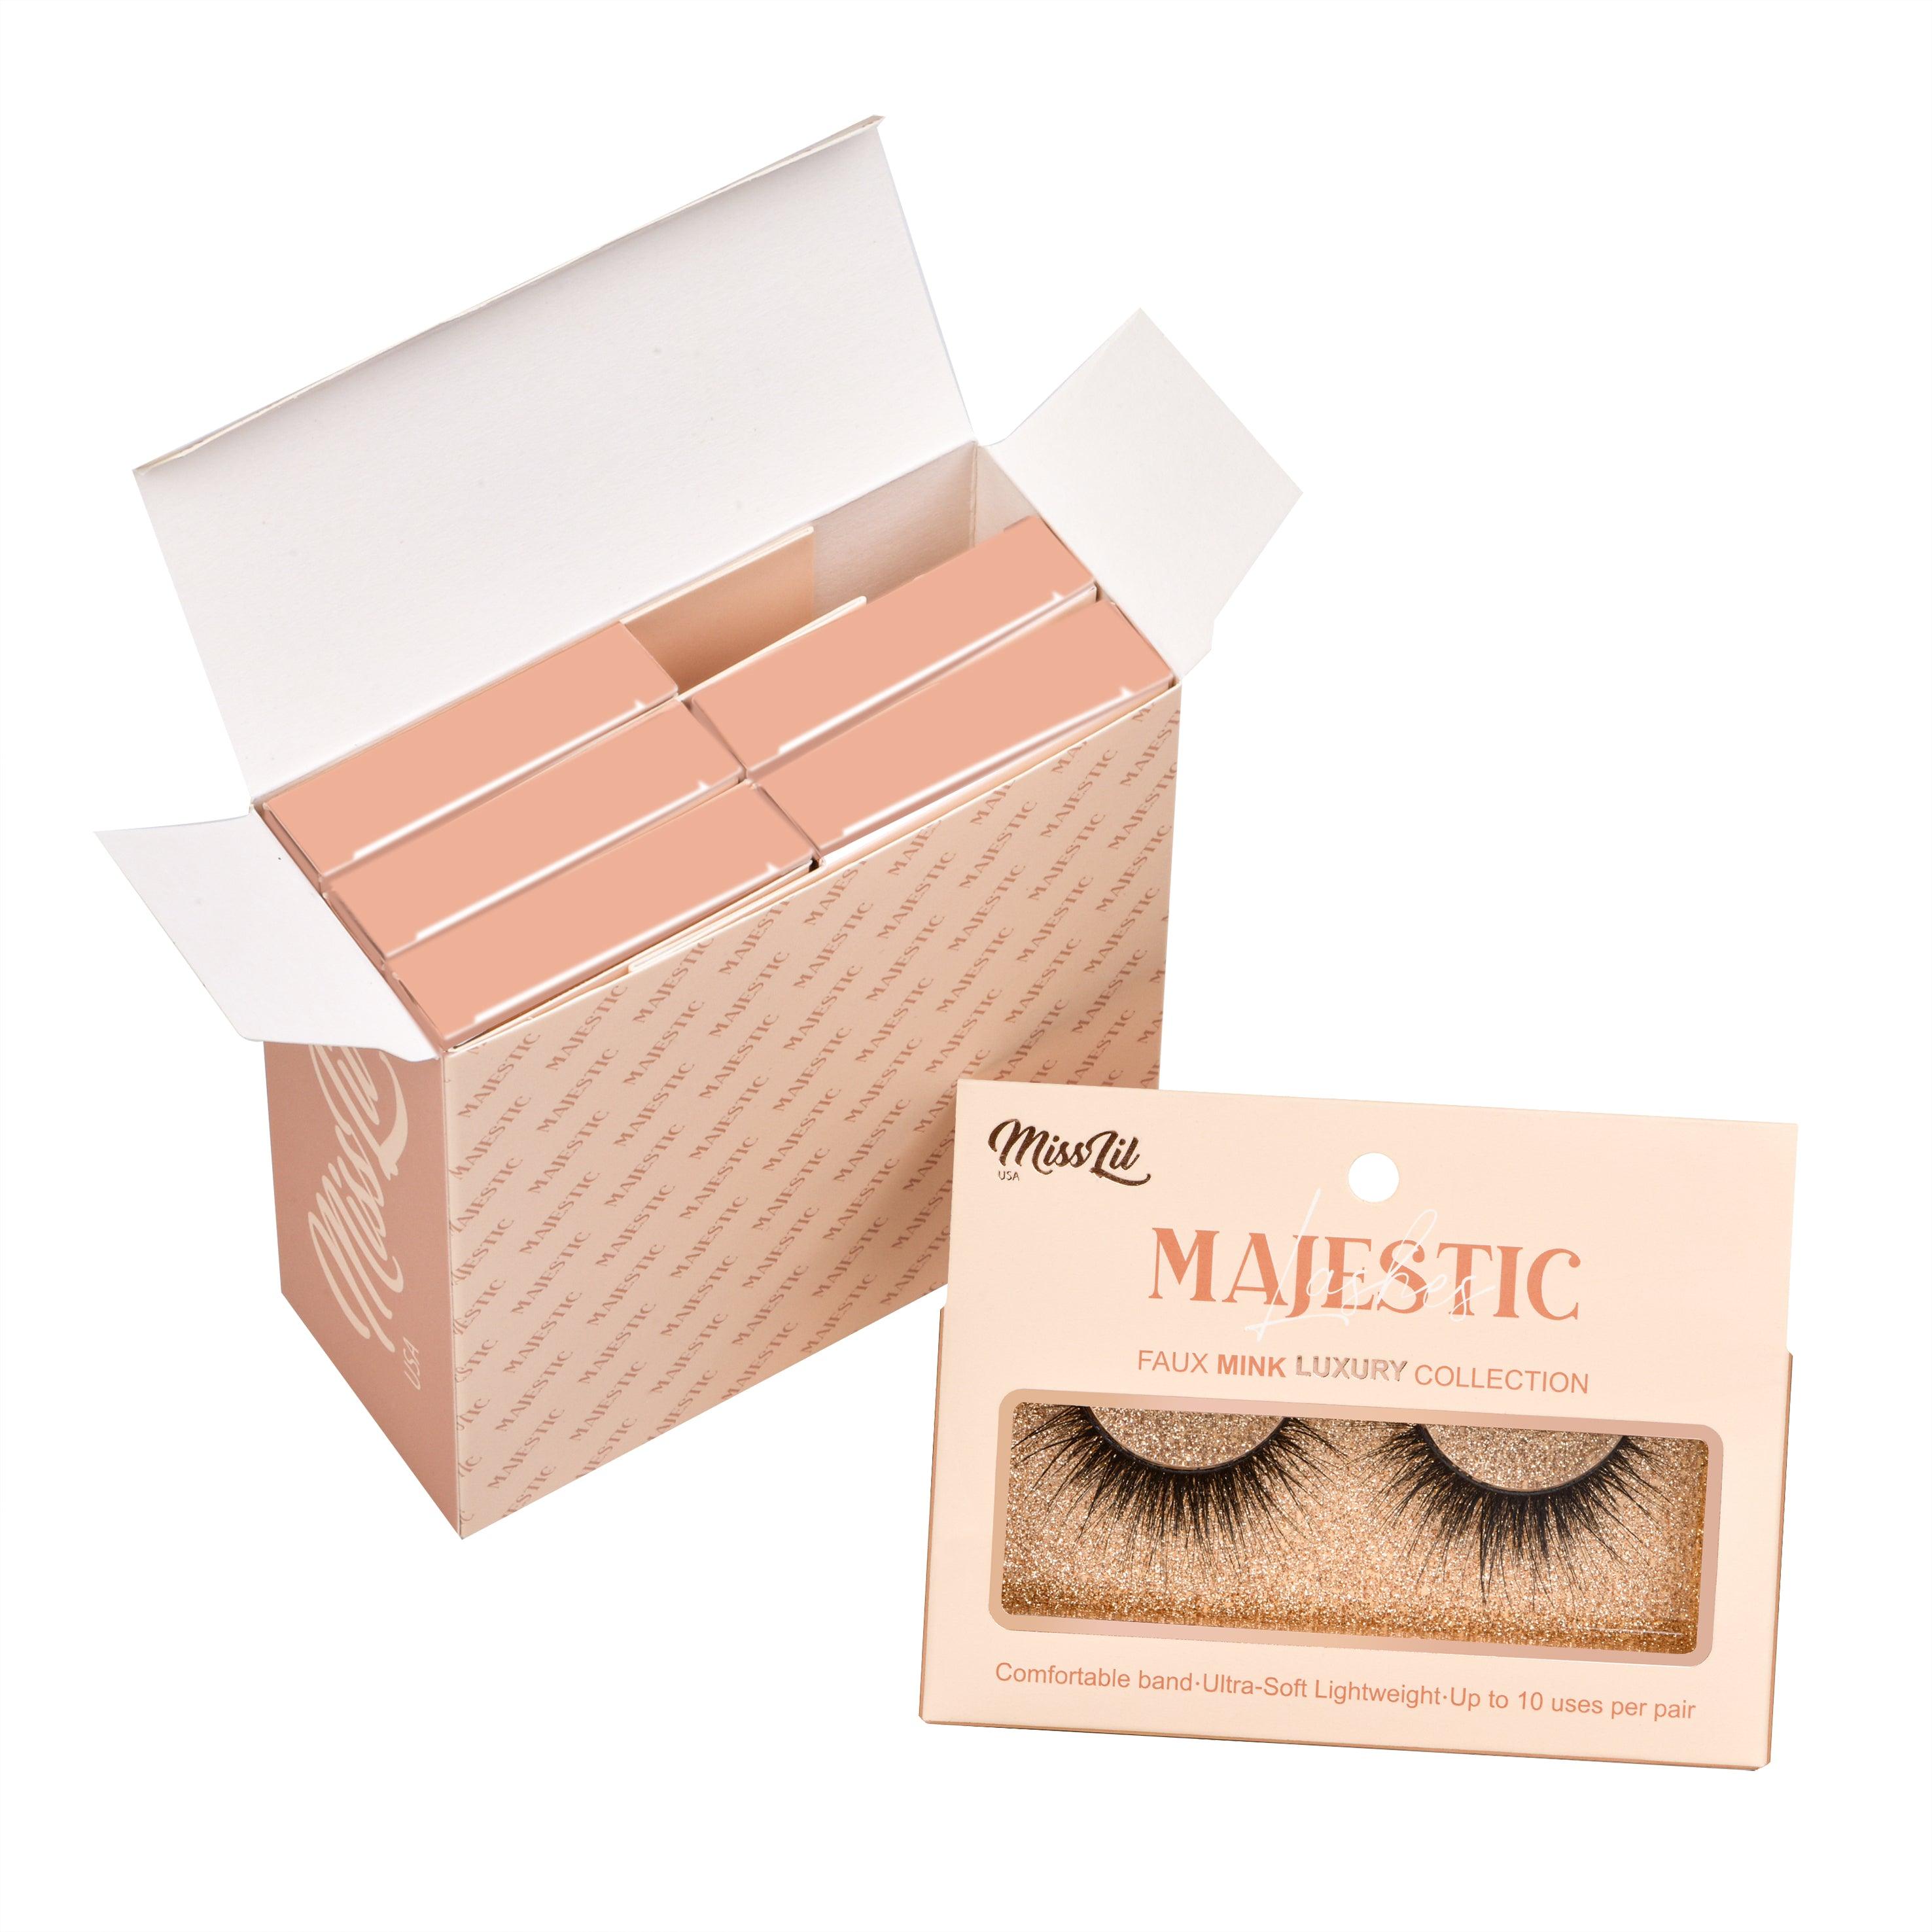 Majestic Collection 27 False Eyelashes - Miss Lil USA Wholesale